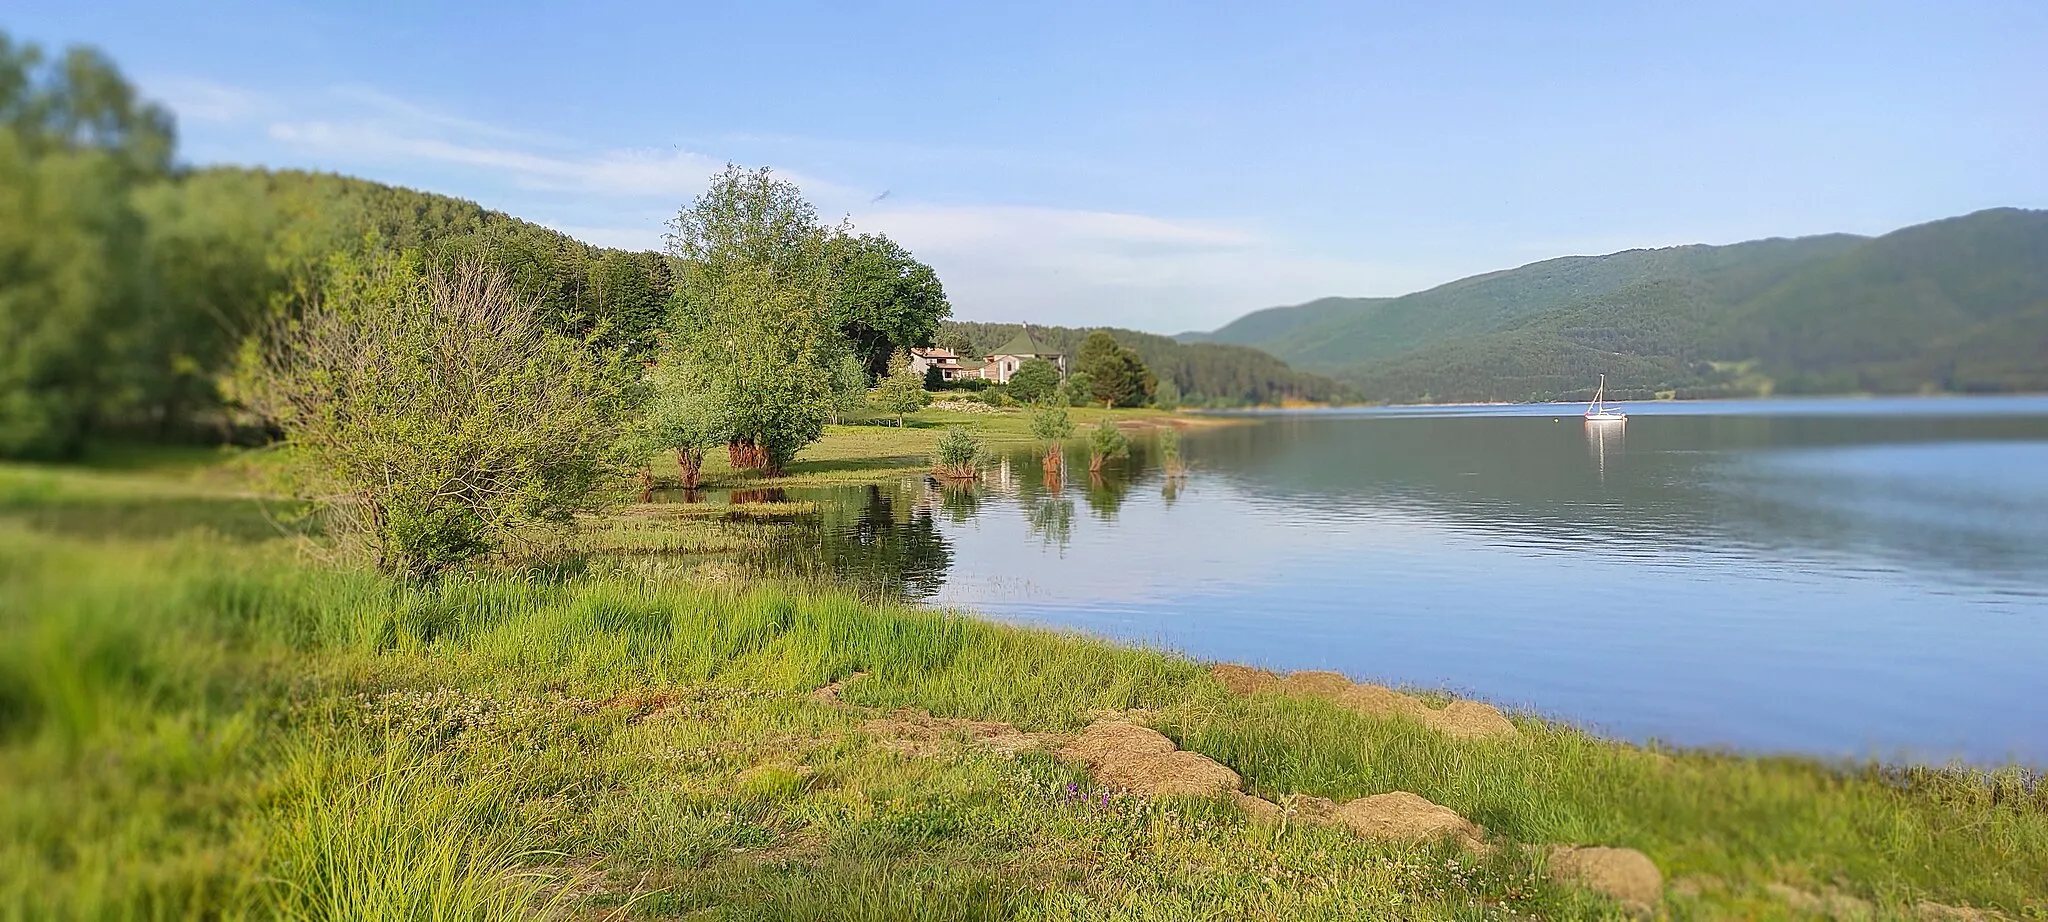 Photo showing: Parco nazionale della Sila - Immagine del lago Arvo, in Sila, sul lungolago della località Lorica, in provincia di Cosenza